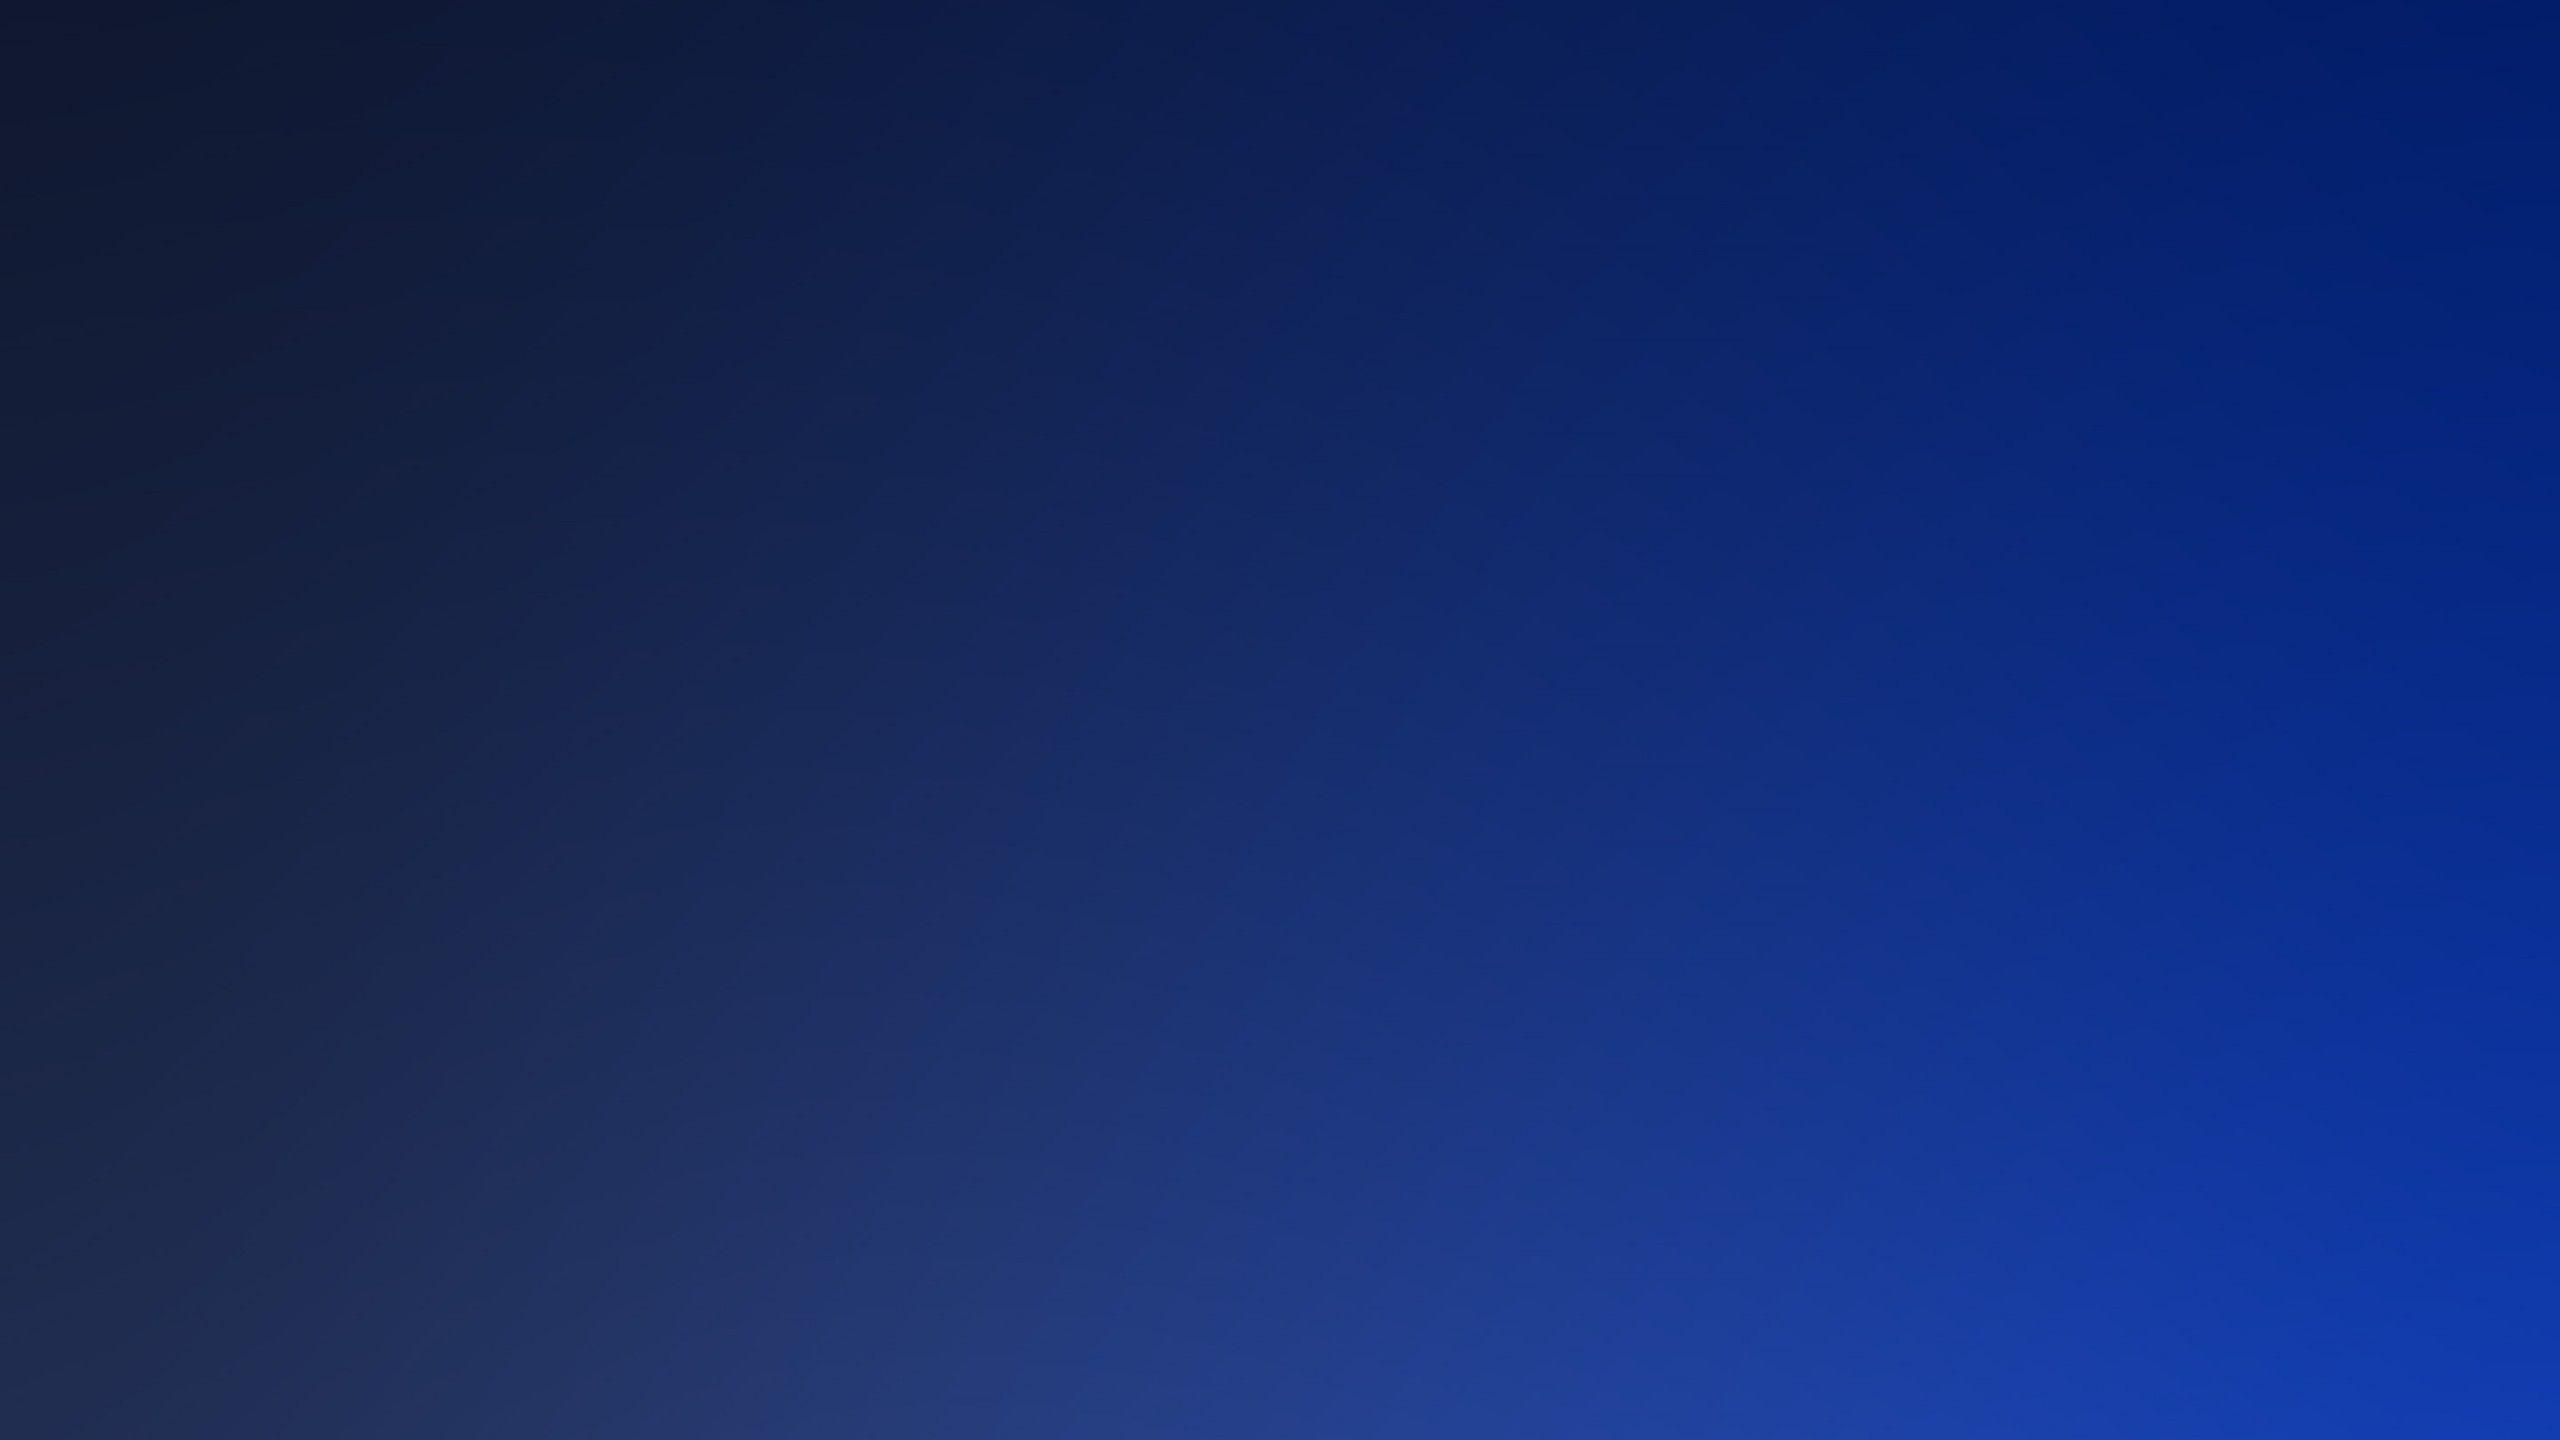 Dark Blue Gradient Wallpapers - Top Free Dark Blue Gradient Backgrounds